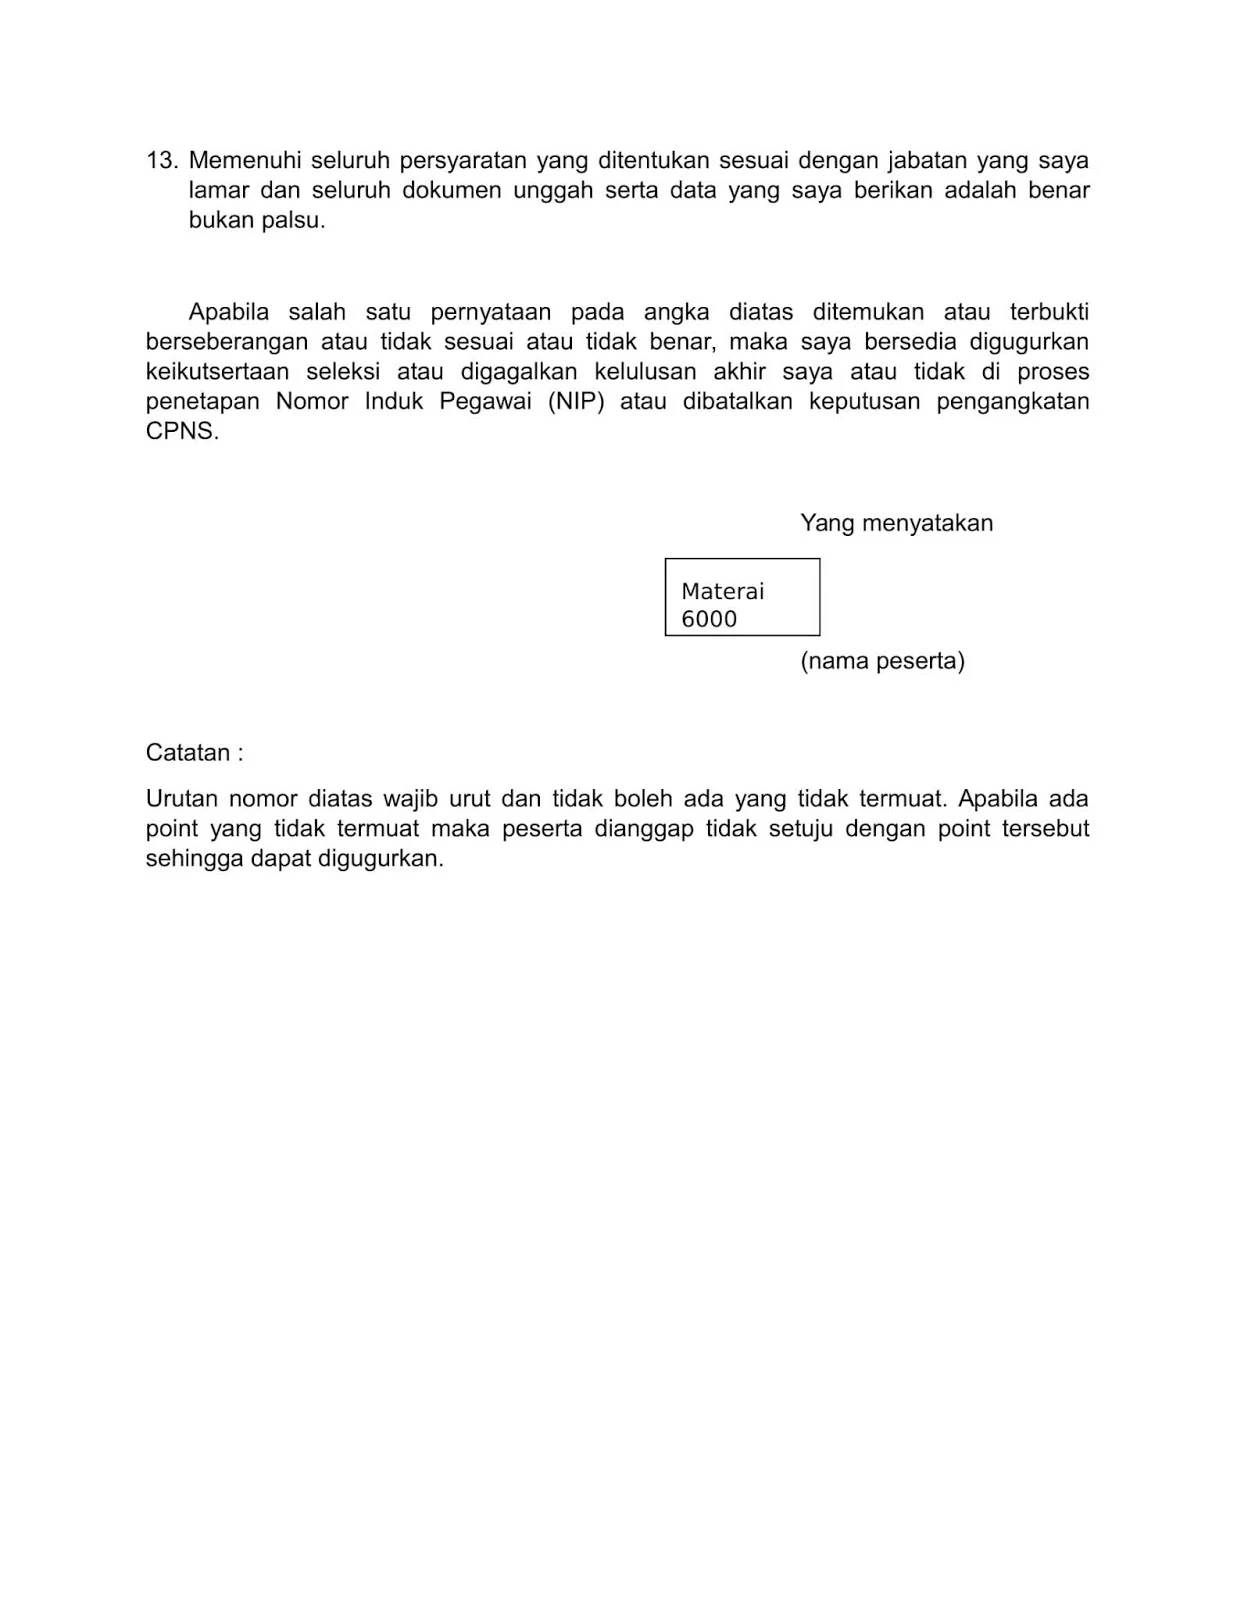 Contoh Format Surat Pernyataan CPNS Kementerian Hukum dan HAM Tahun 2019